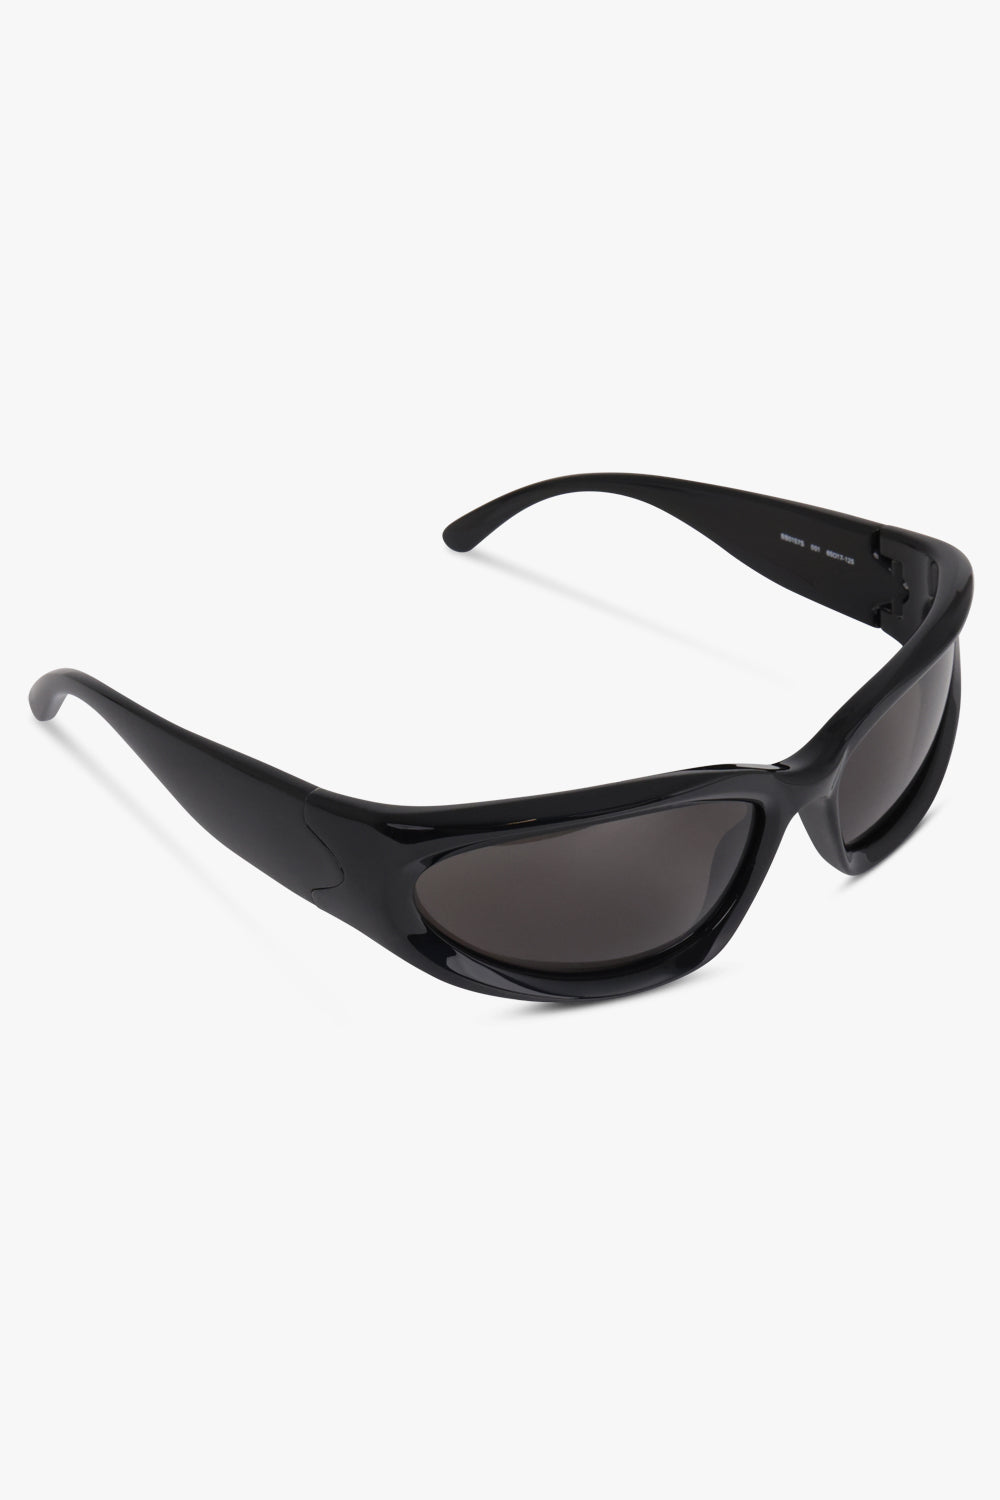 BALENCIAGA ACCESSORIES BLACK / BLACK Swift Oval Sunglasses | Black